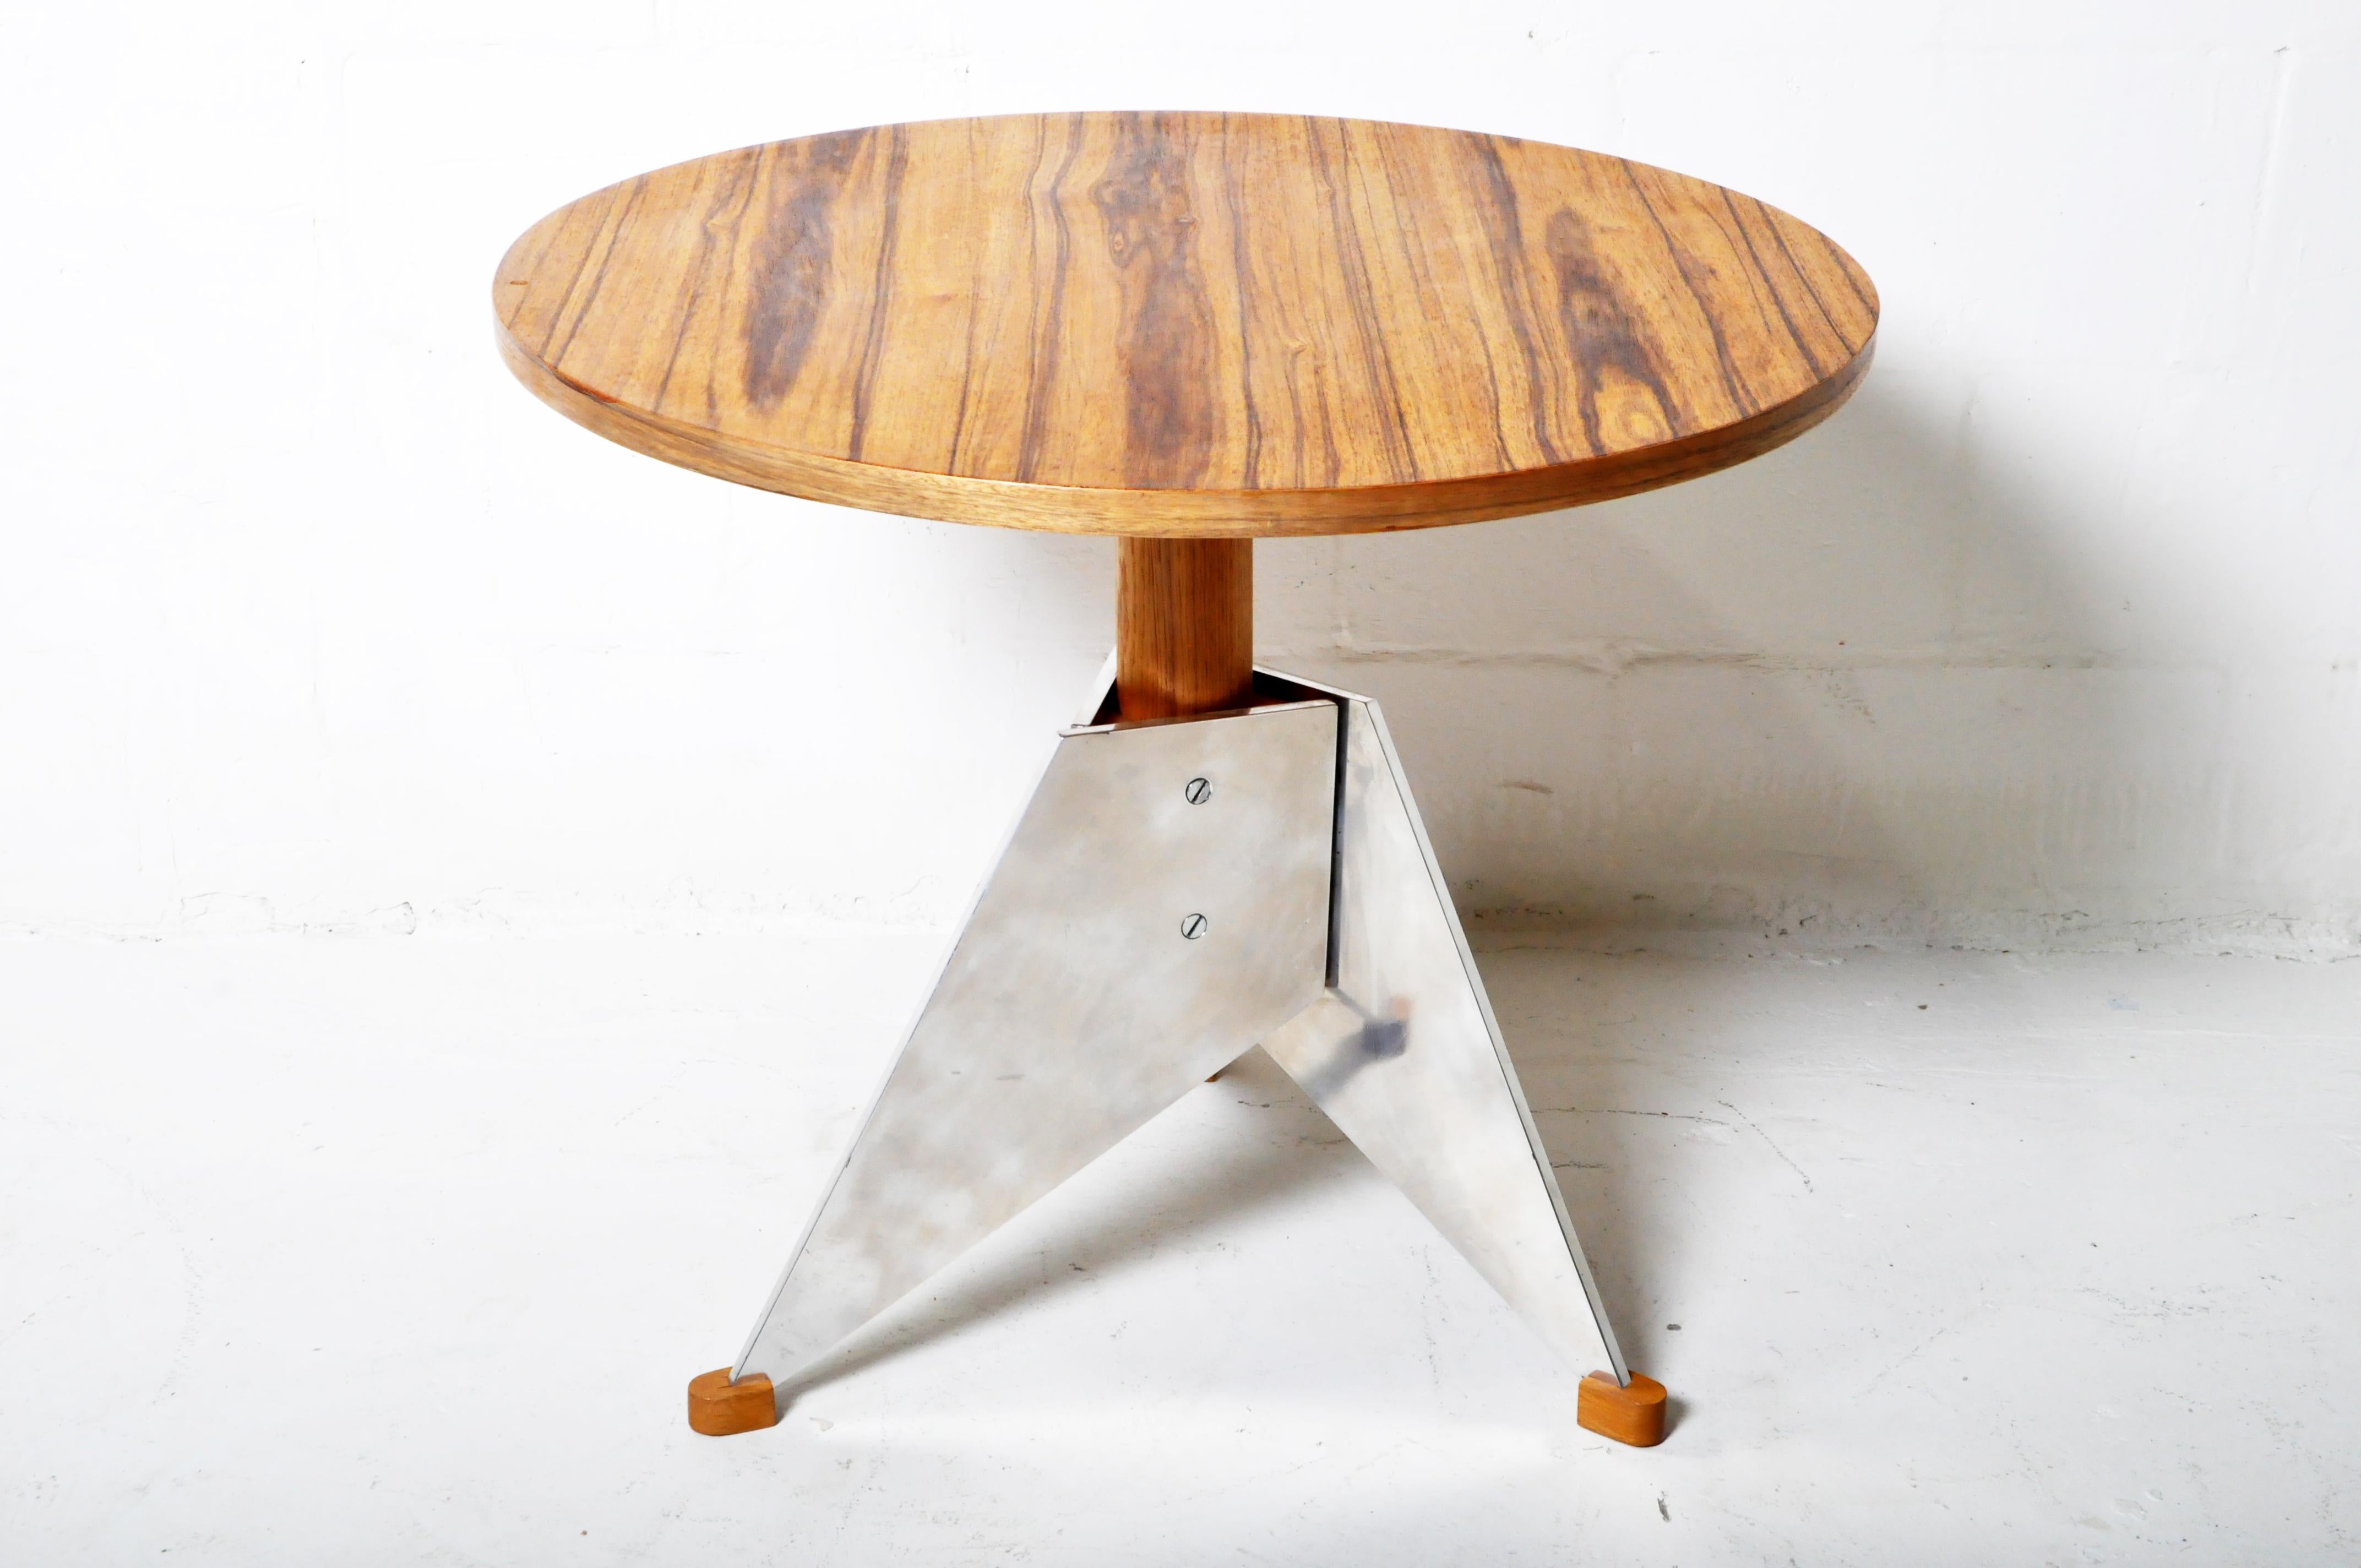 Dieser runde Tisch aus hellem Walnussfurnier hat einen kantigen Fuß aus verchromtem Stahl. Der Tisch ist ein Beispiel für brutalistisches 